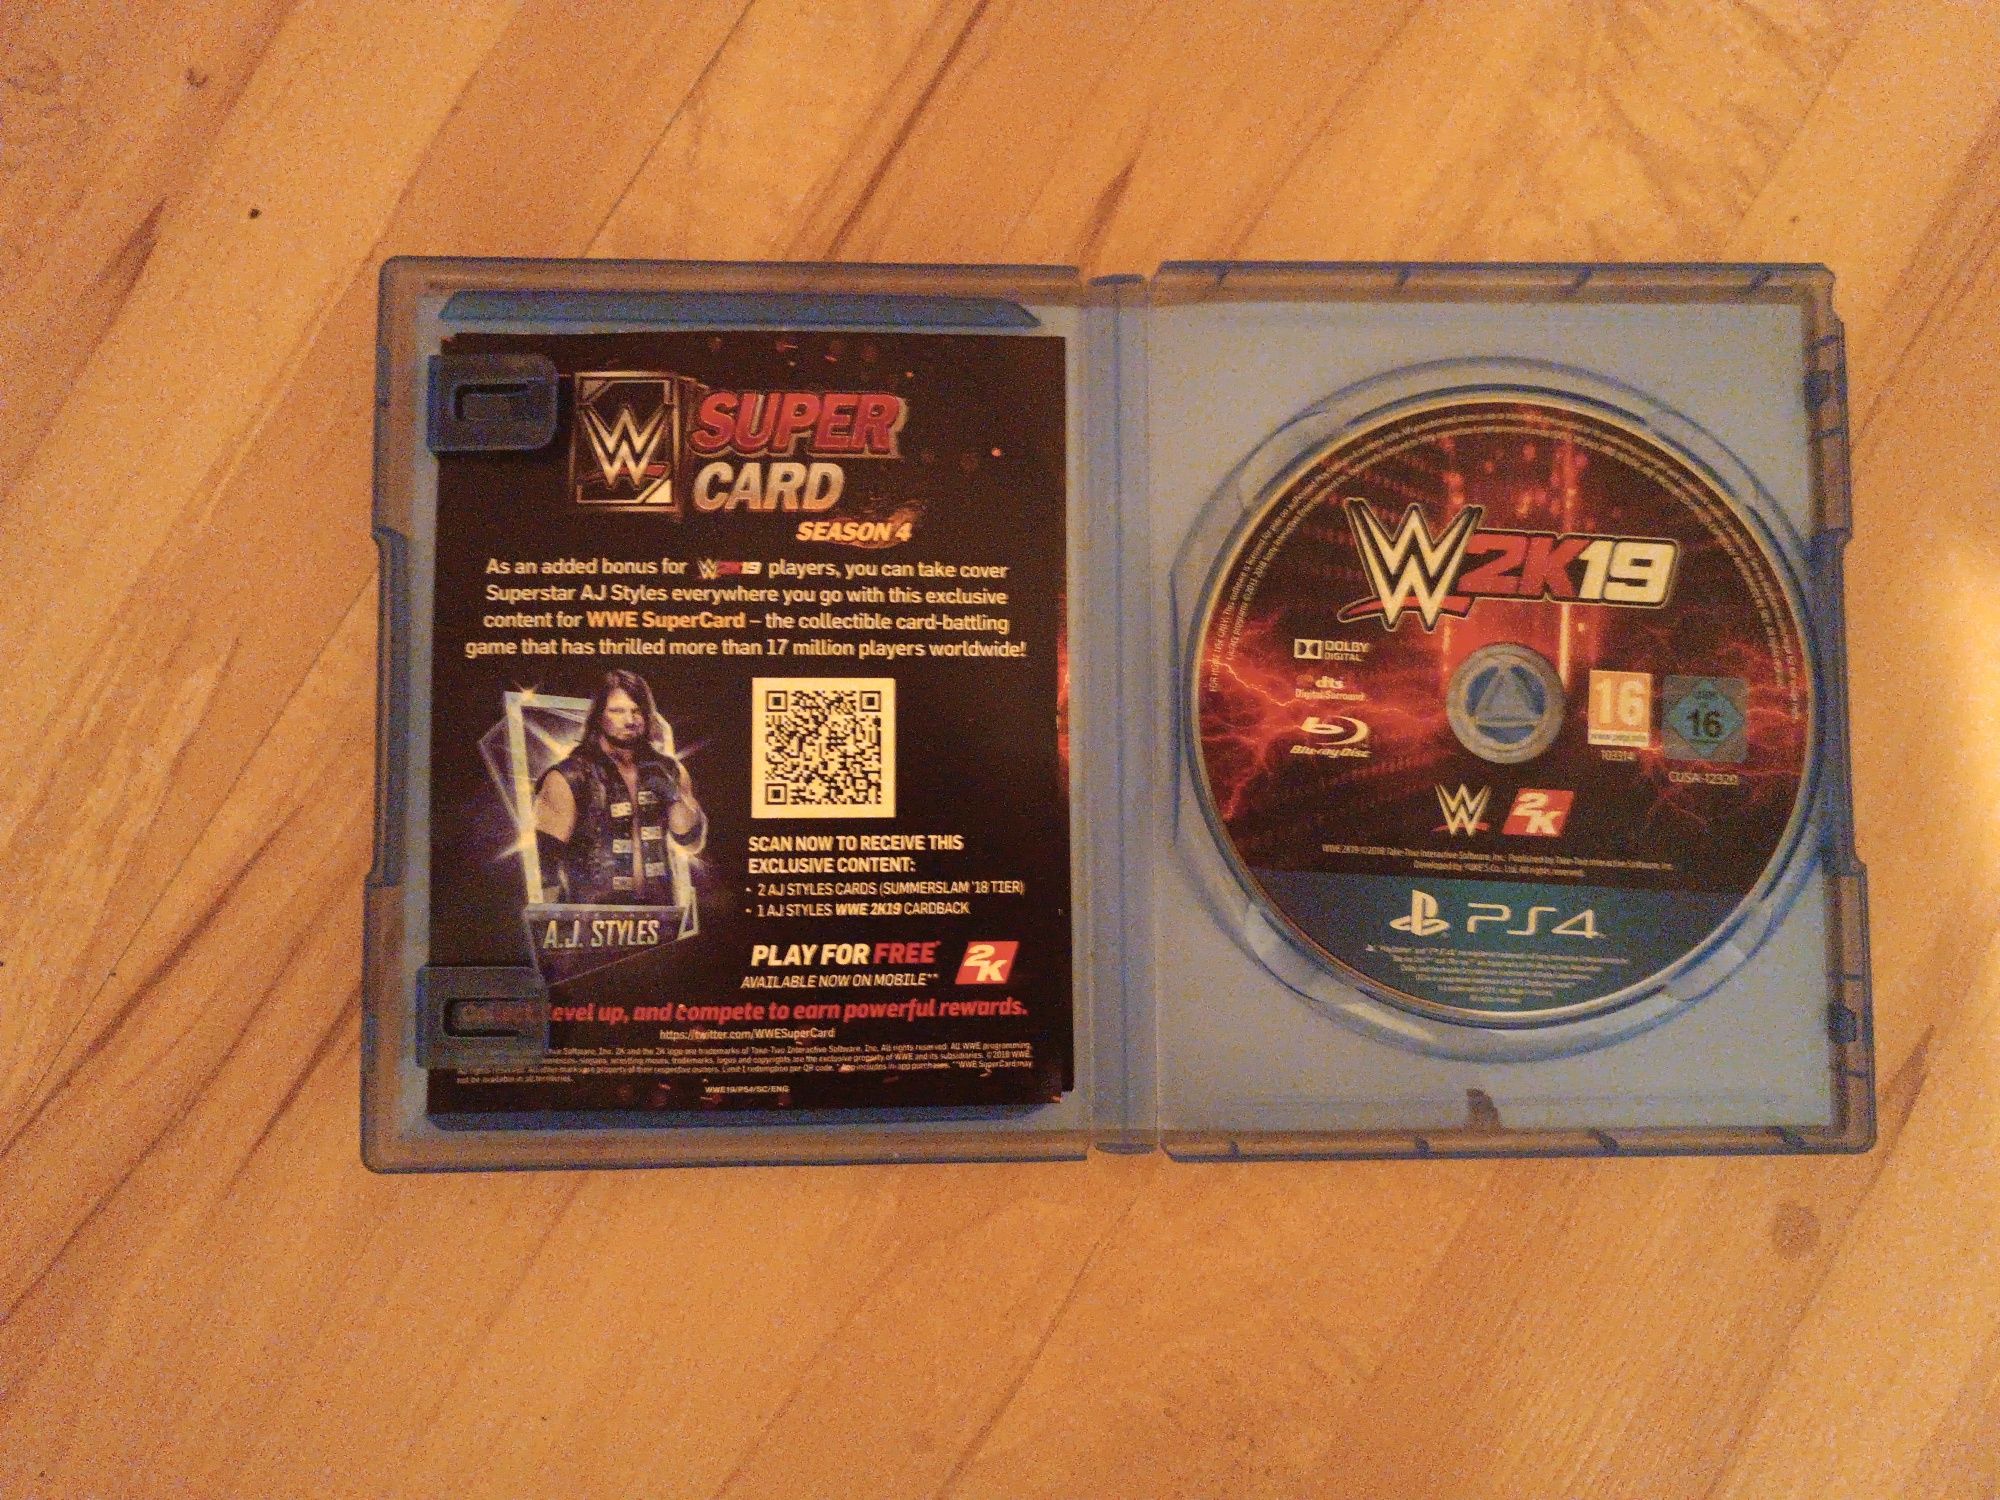 WWE 2K19 PlayStation 4